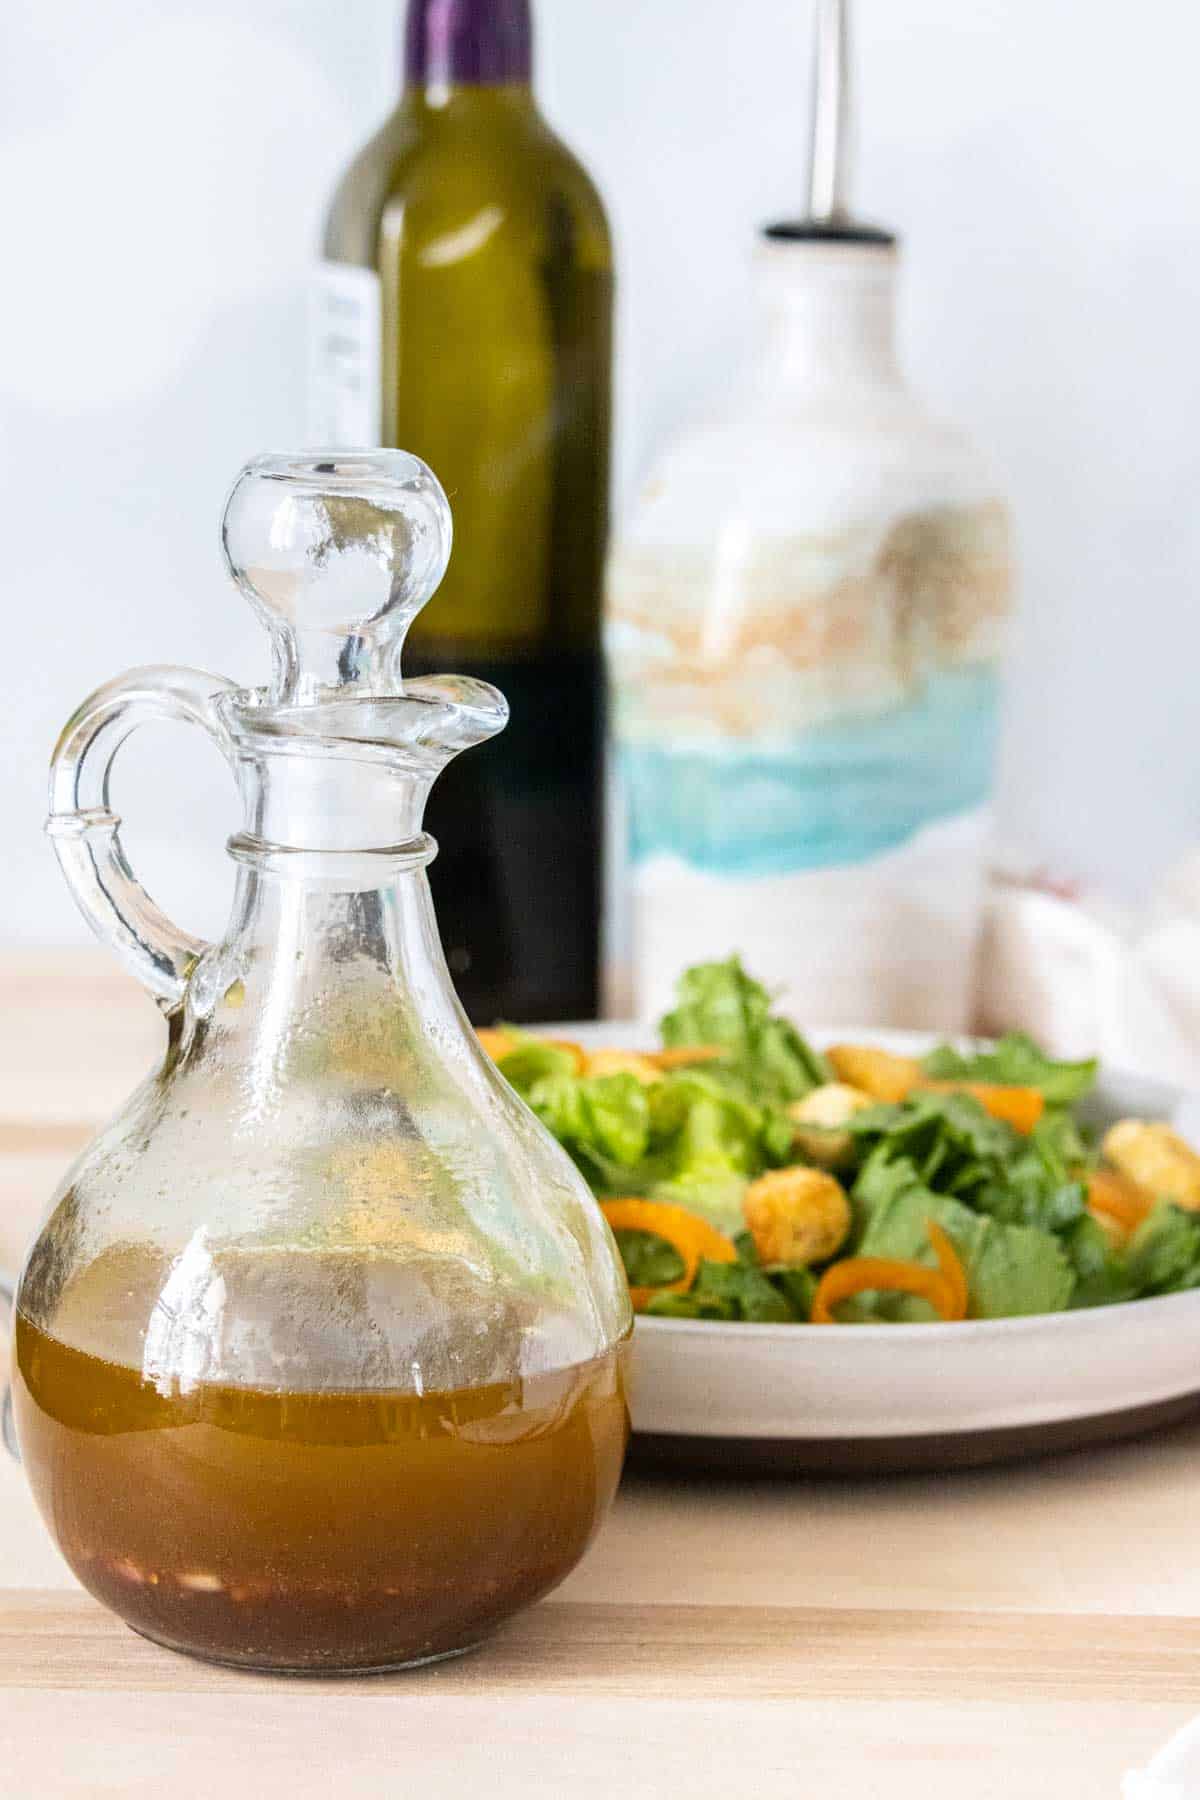 Bottle of homemade balsamic vinaigrette in front of a salad.